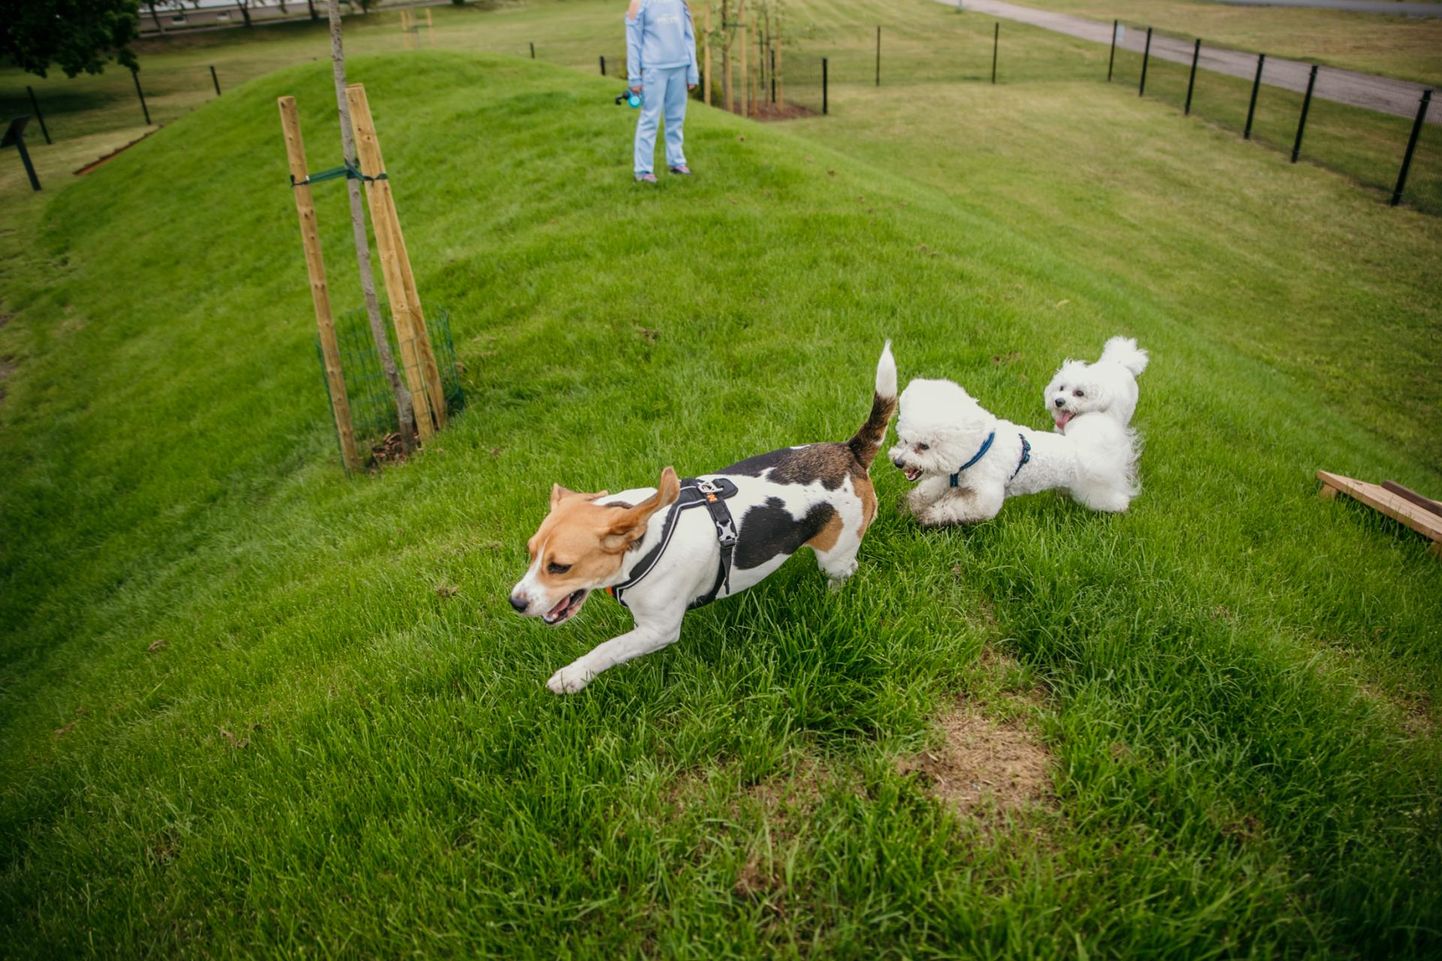 Koerte mänguväljaku avamisele saabus eriilmelisi koeri, kes tõule vaatamata üheskoos lustides spontaanse jooksuvõistluse korraldasid.